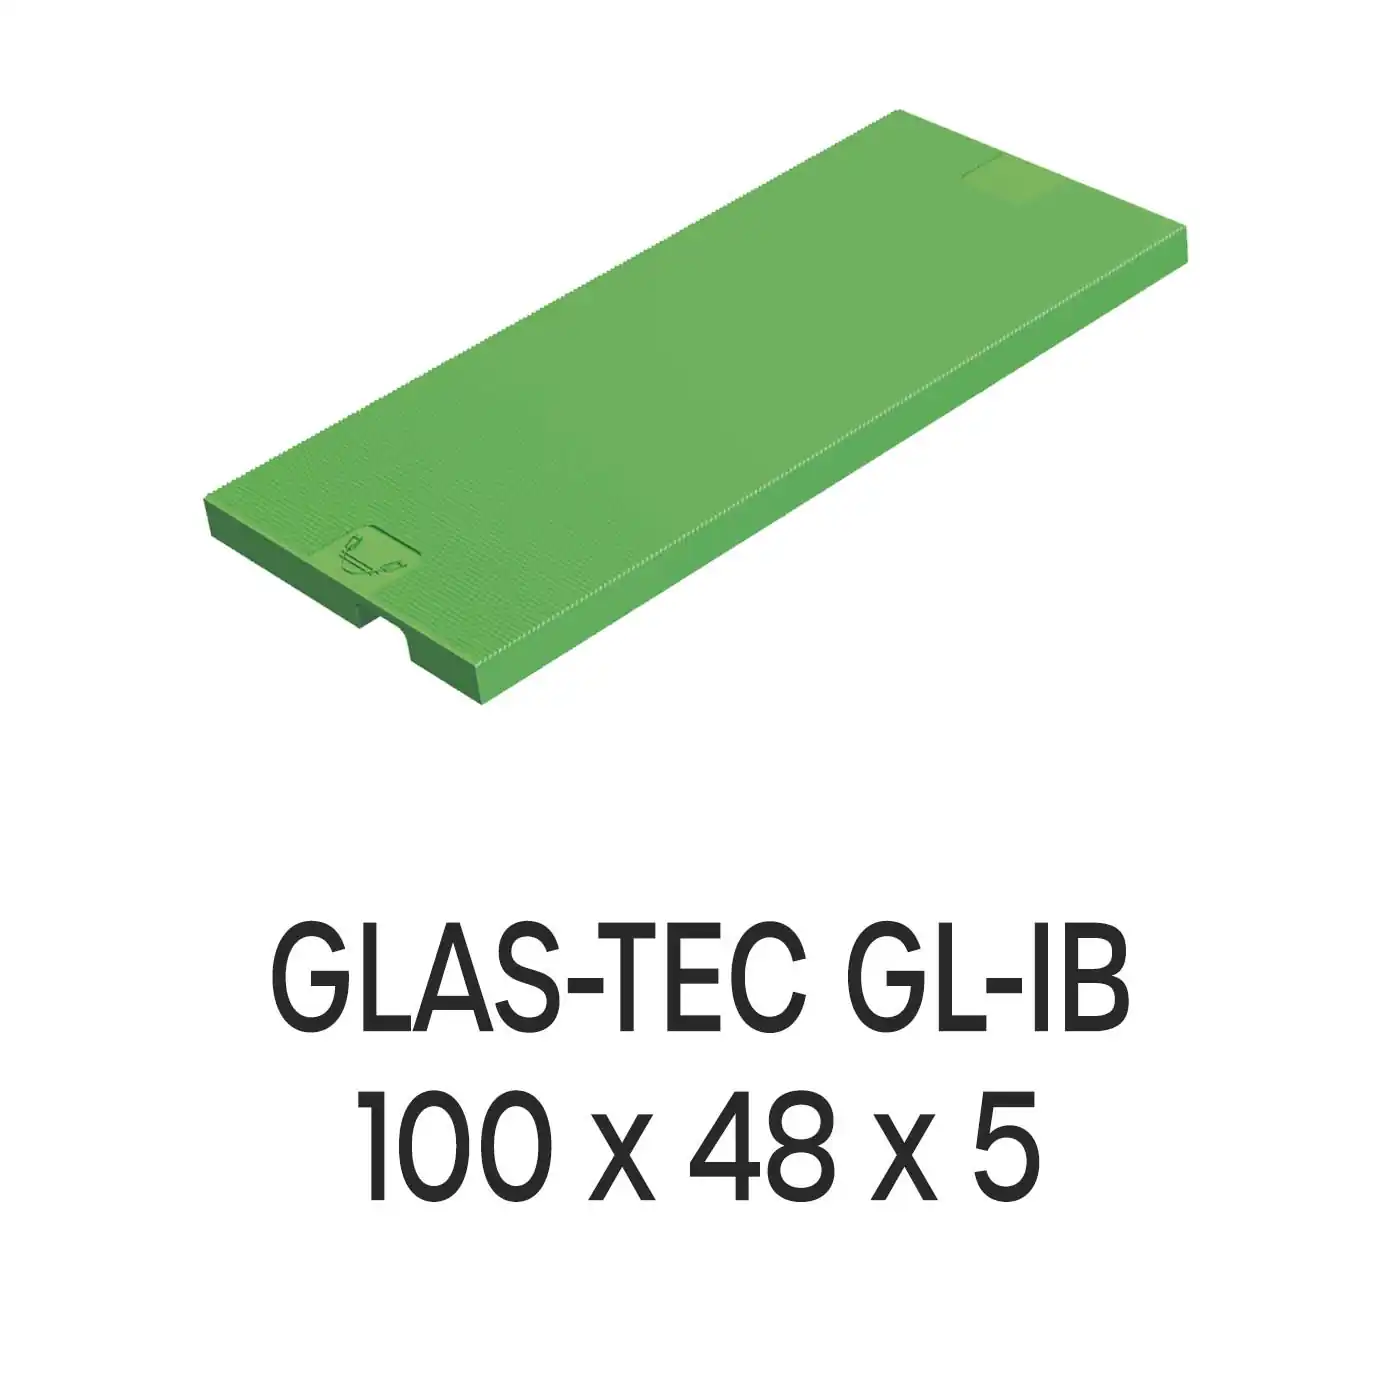 Roto Verglasungsklotz GLAS-TEC GL-IB, 100 x 48 x 5 mm, schwarz, 500 Stück